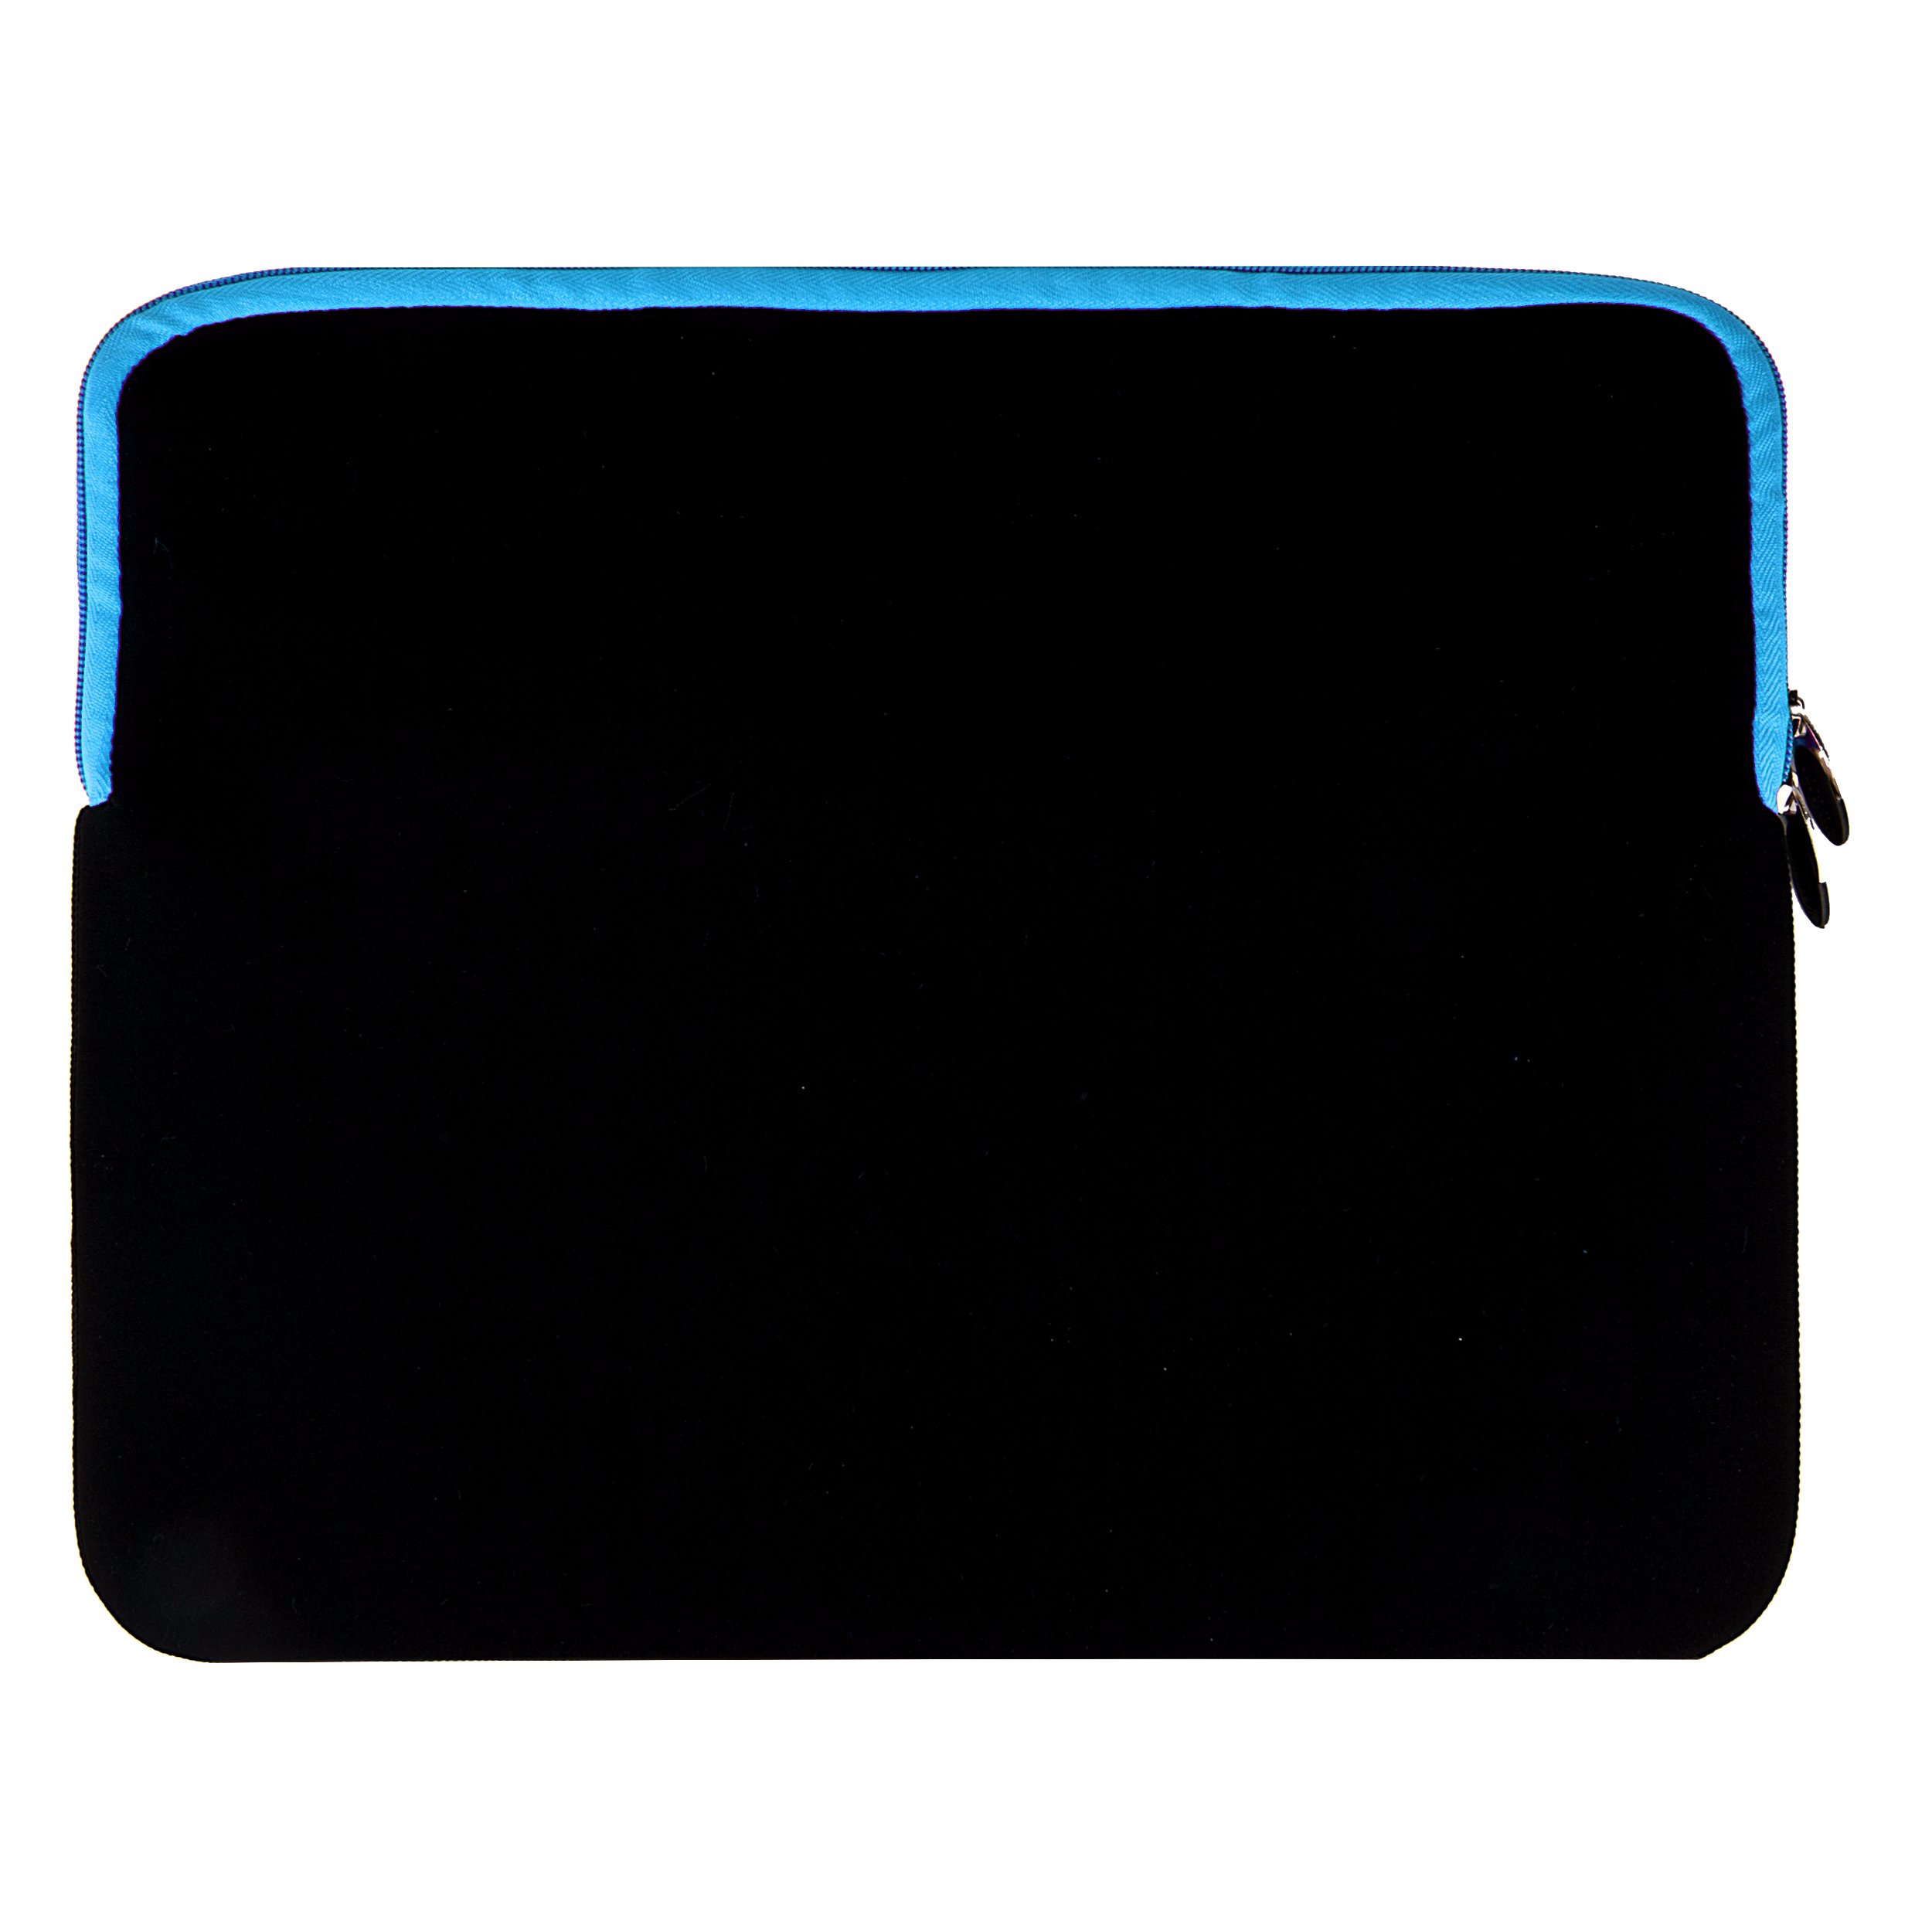 Laptop Cover Case Sleeve for HP EliteBook 850 840 G7 G6 G5, x360 1040 1030 830 G7 G6 G3, ProBook 650 640 450 G7 (Black Blue)